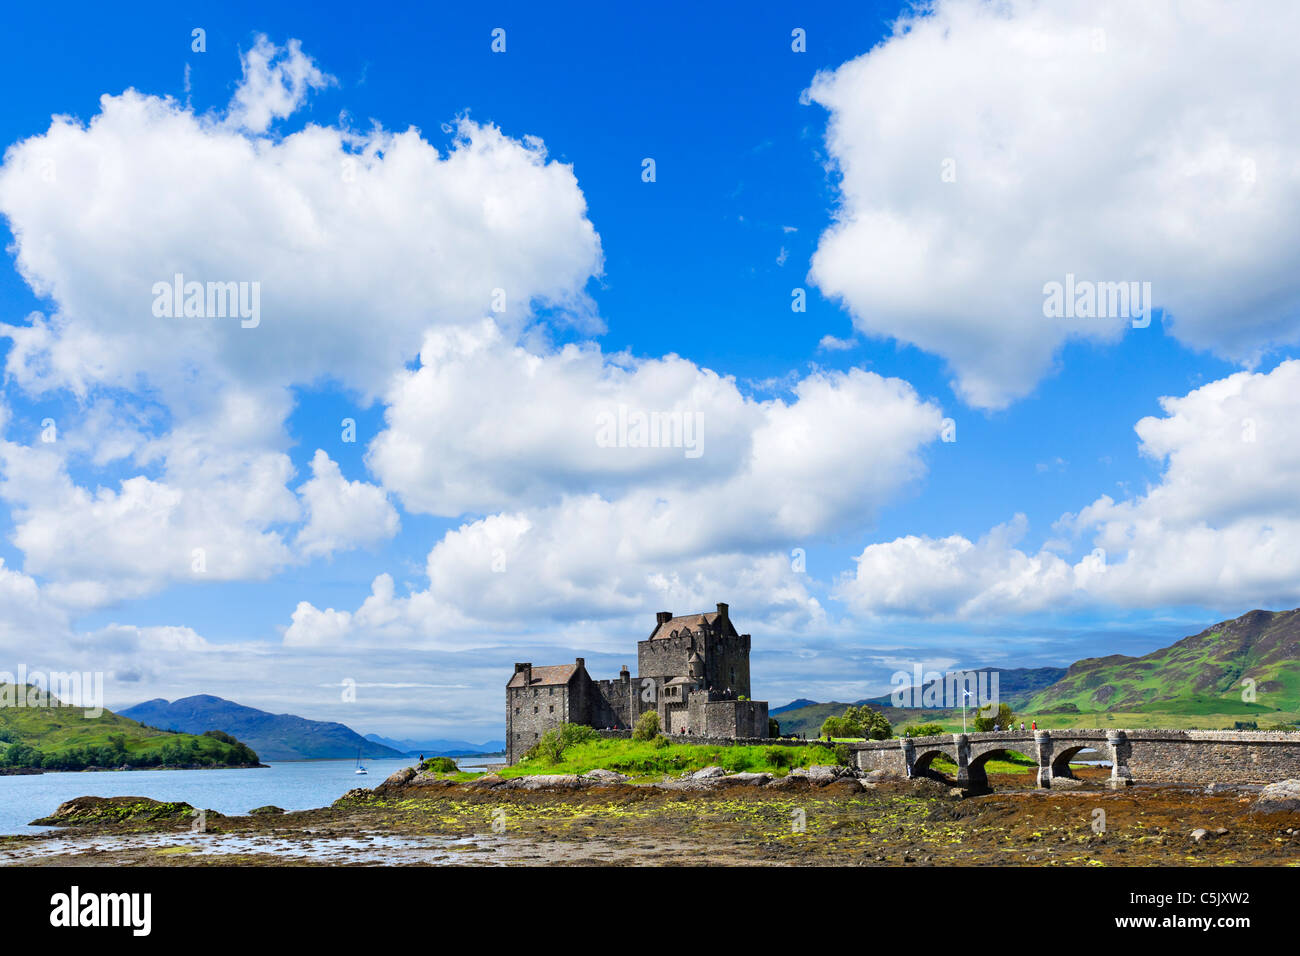 View towards Eilean Donan Castle, Loch Duich, Highland, Scotland, UK. Scottish landscape / landscapes / castles Stock Photo